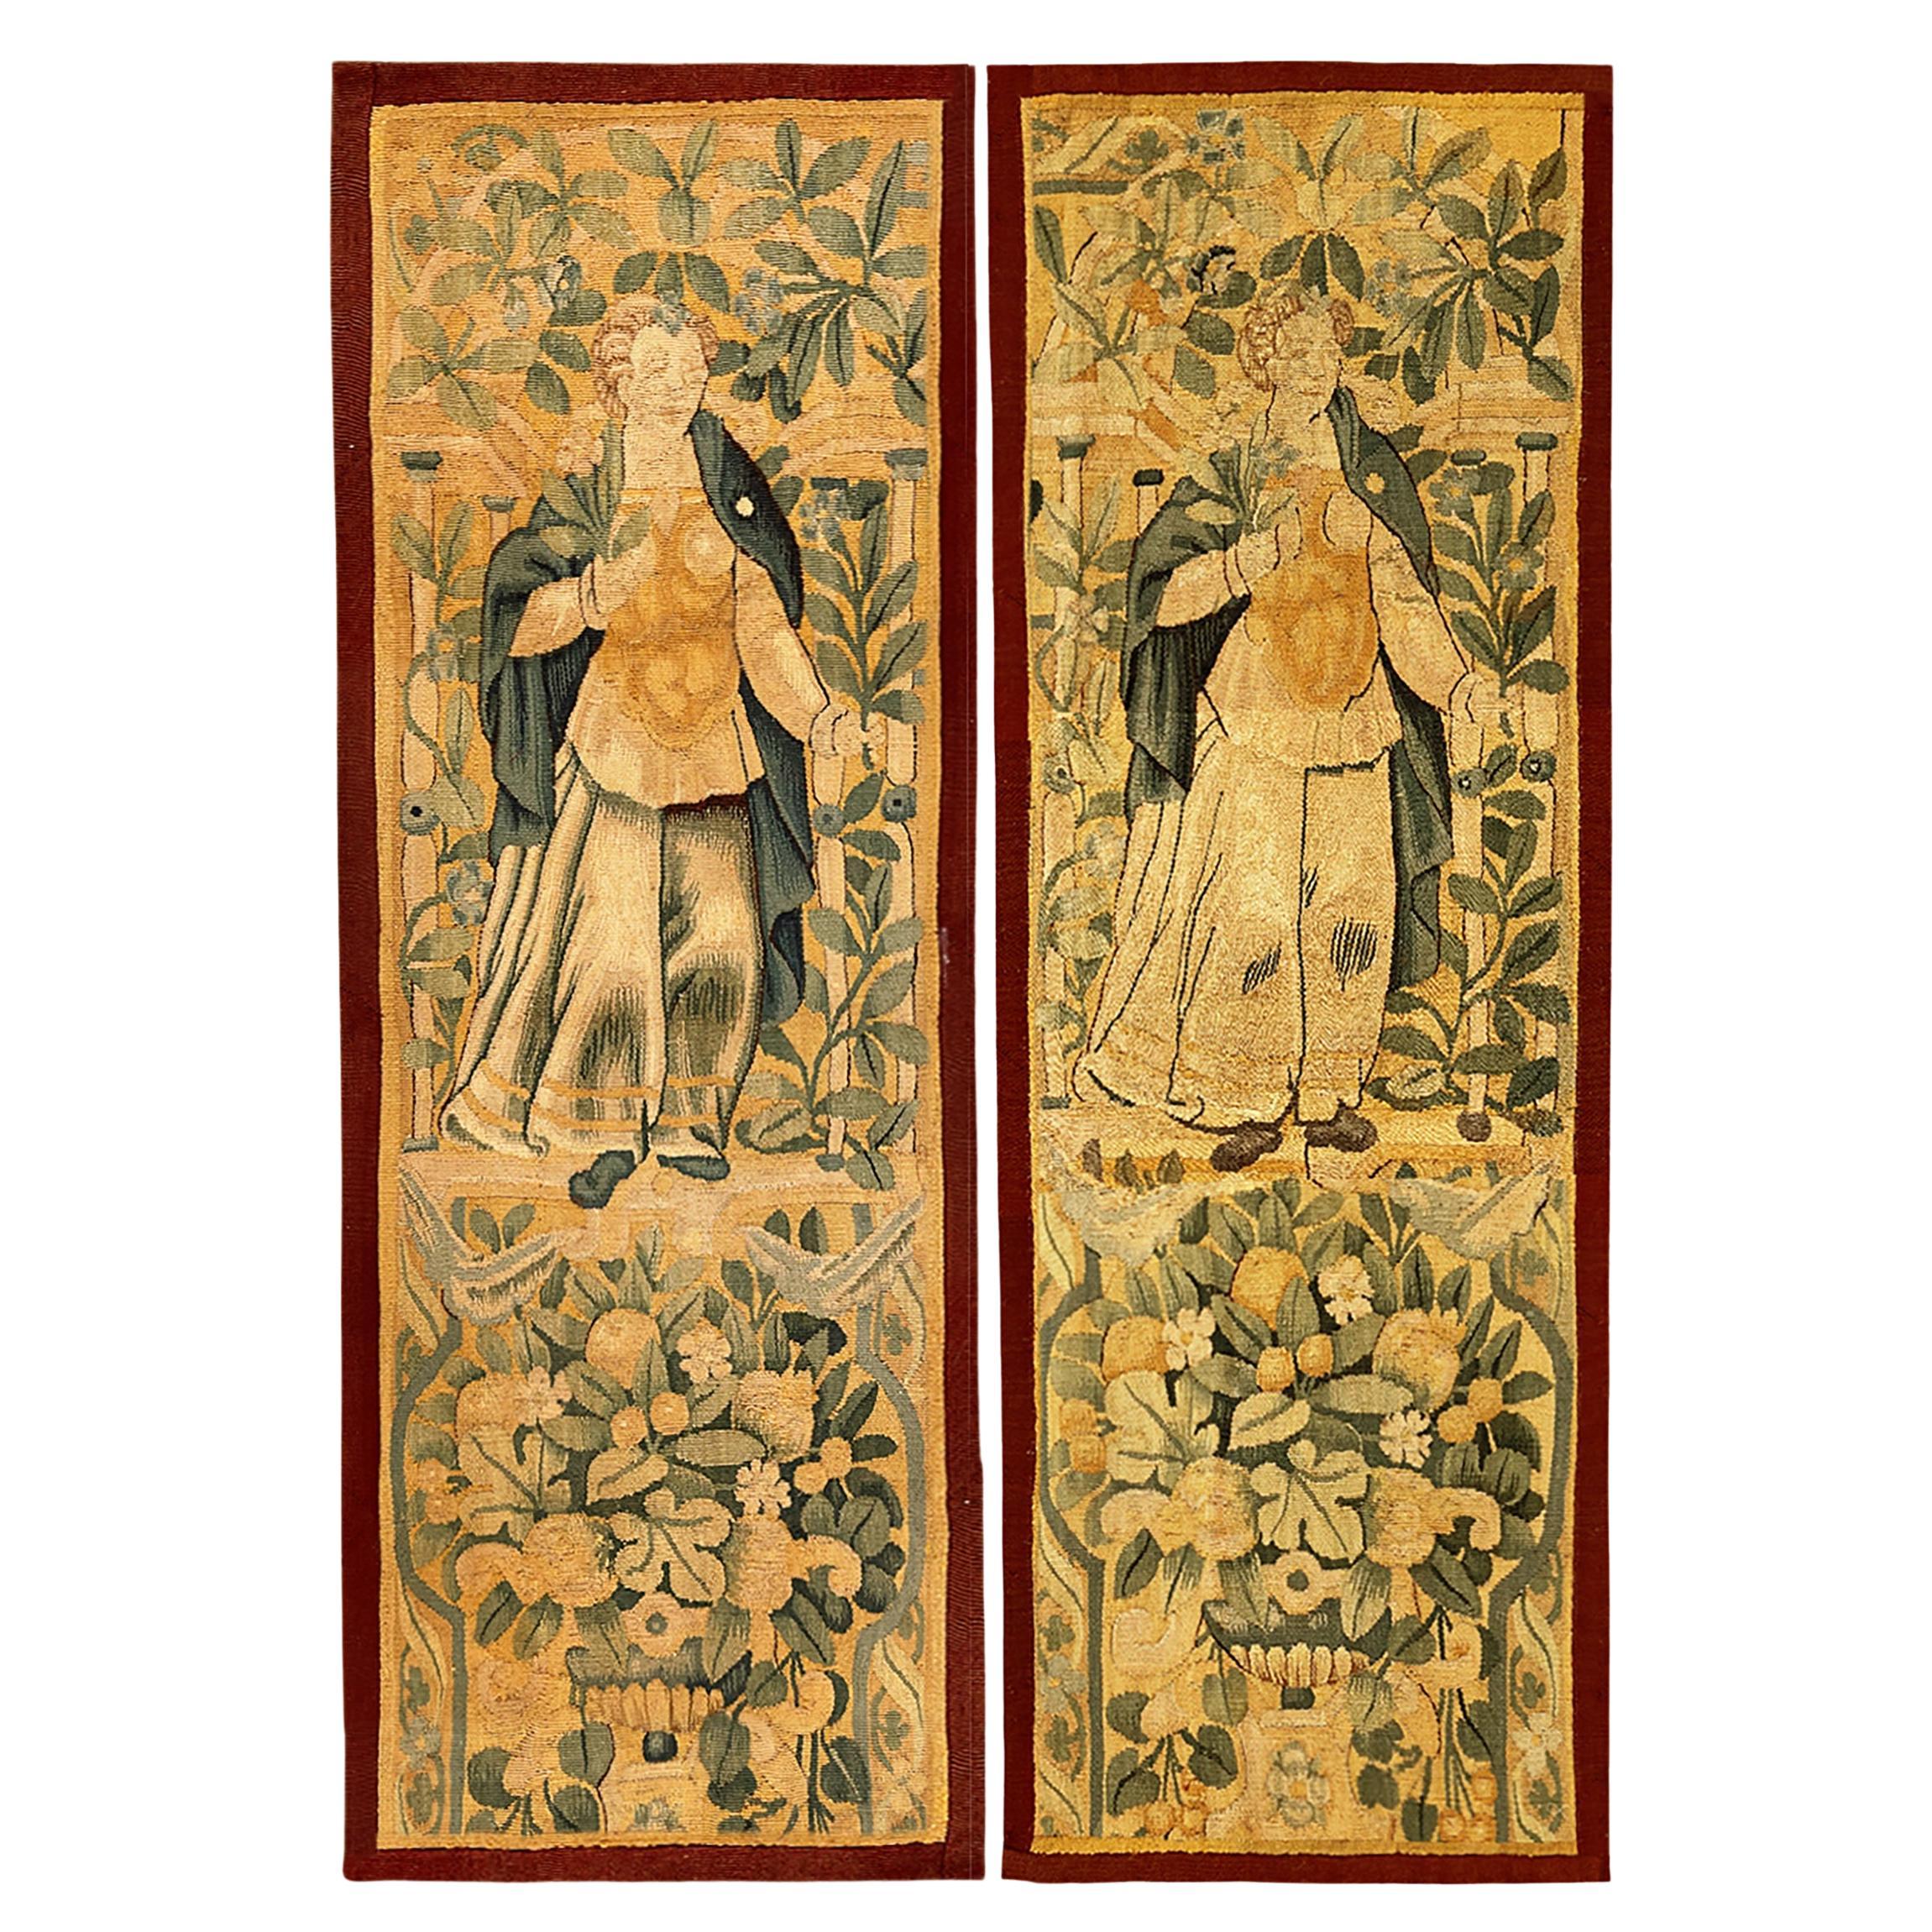 Ein Paar flämische Wandteppiche aus dem 17. Jahrhundert mit weiblichen Figuren und Blumenreservaten